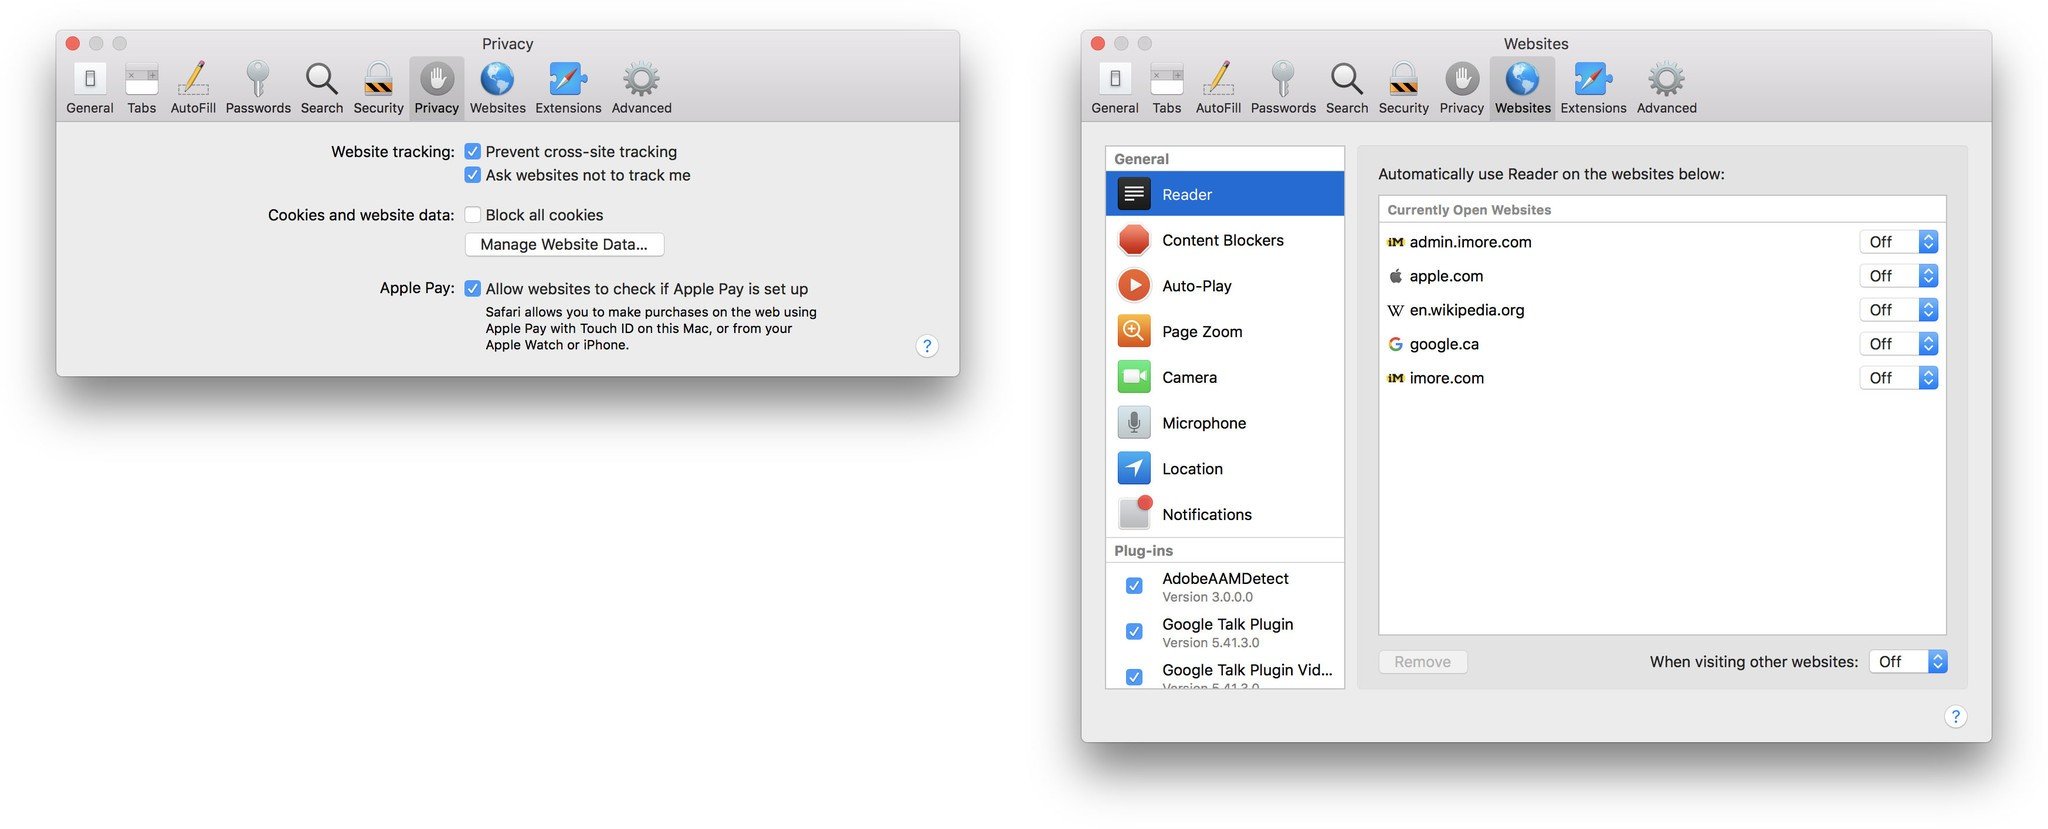 Safari Update For Mac 10.8.5